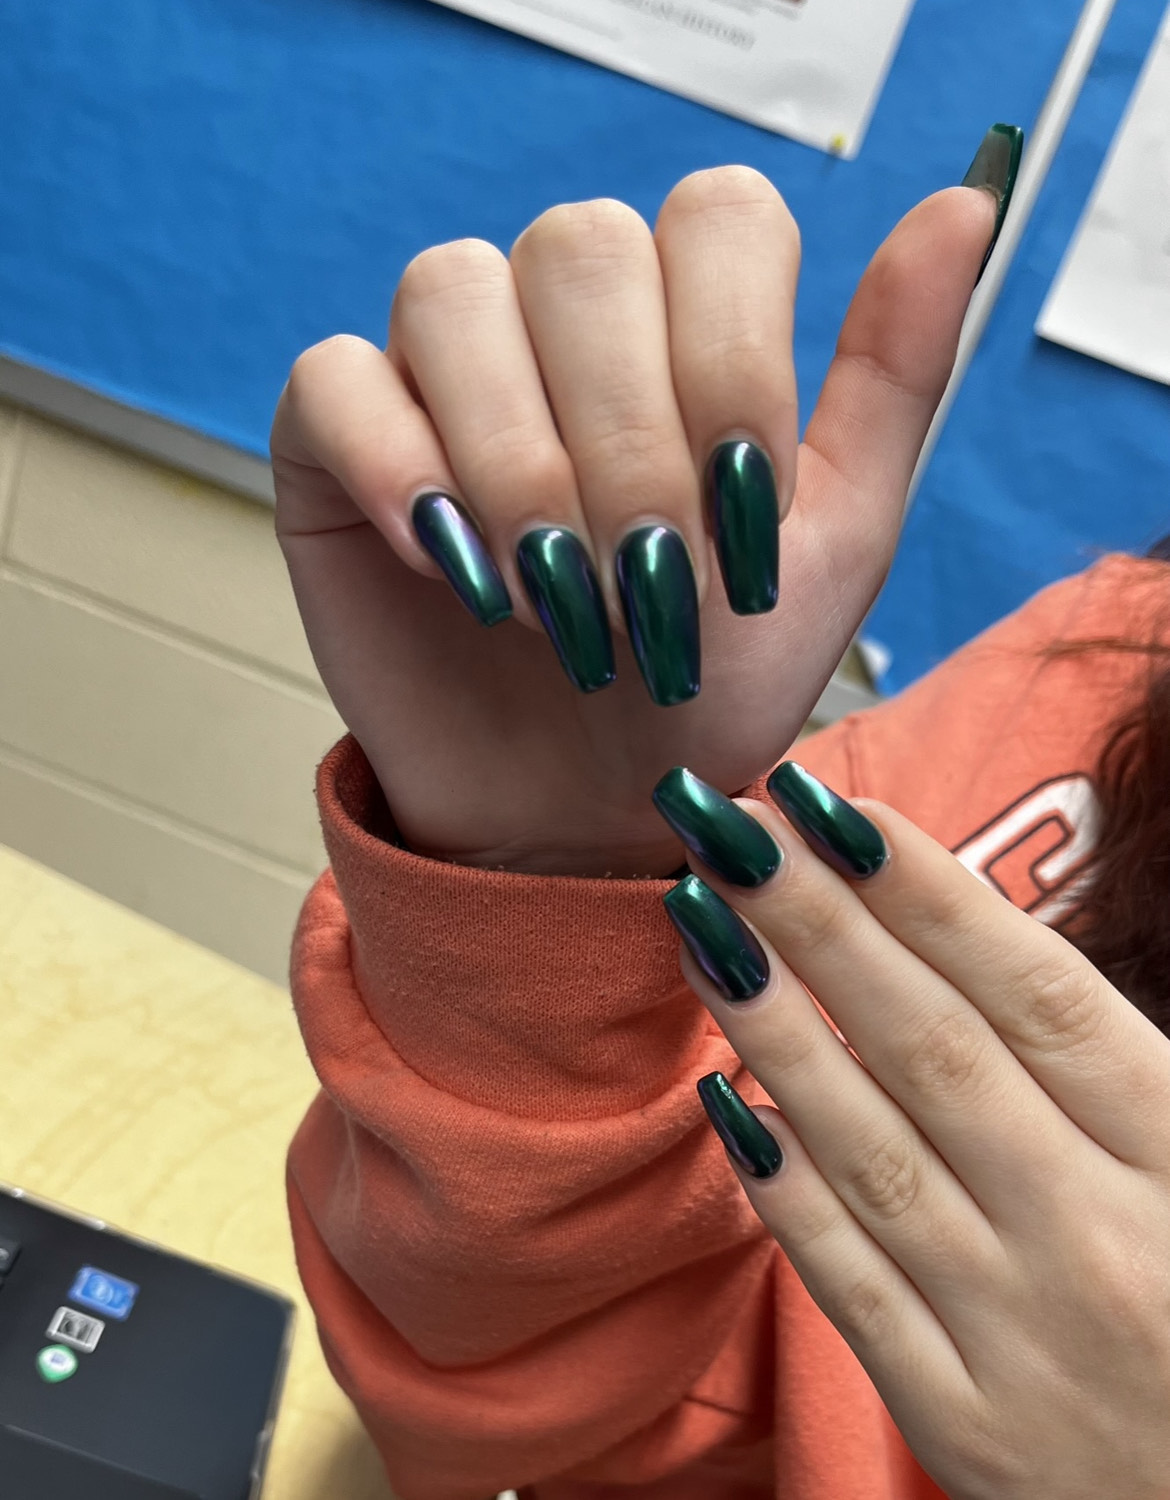 Luciana's nails